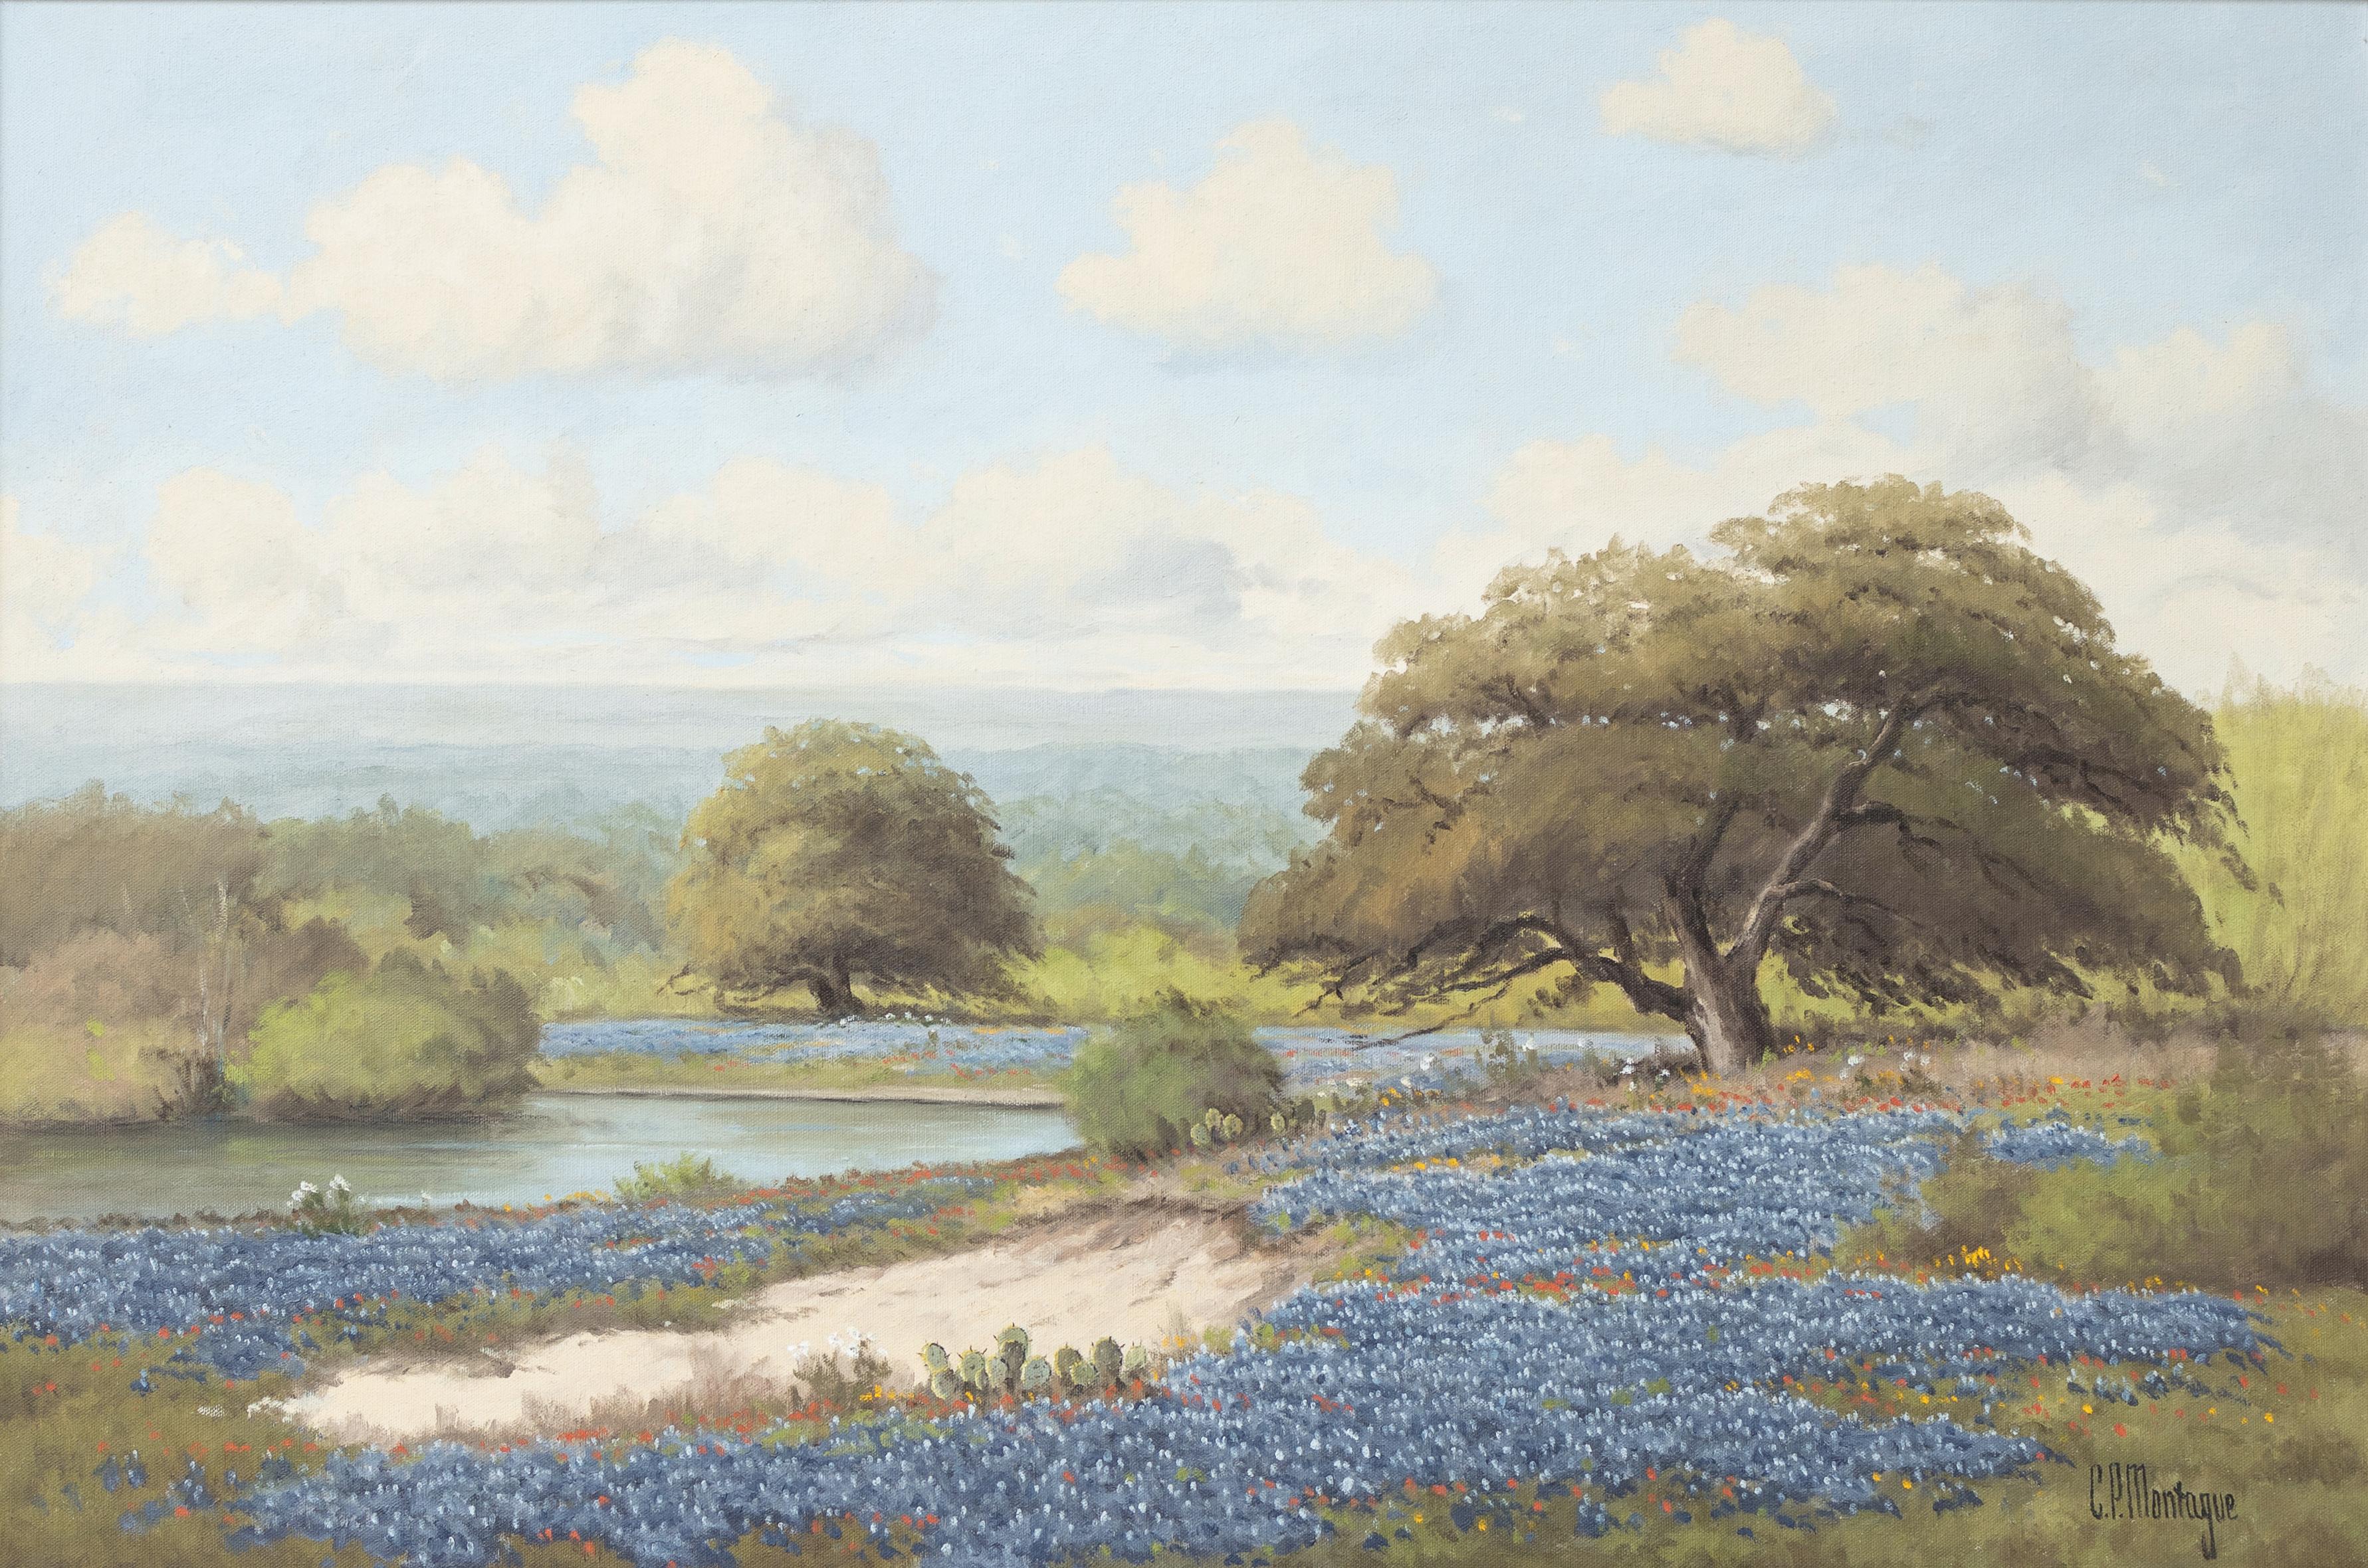 C.P. Montague (Pauline Thweatt) Landscape Painting - "Bluebonnet Landscape" Texas Pastoral Landscape with Bluebonnet Wildflowers